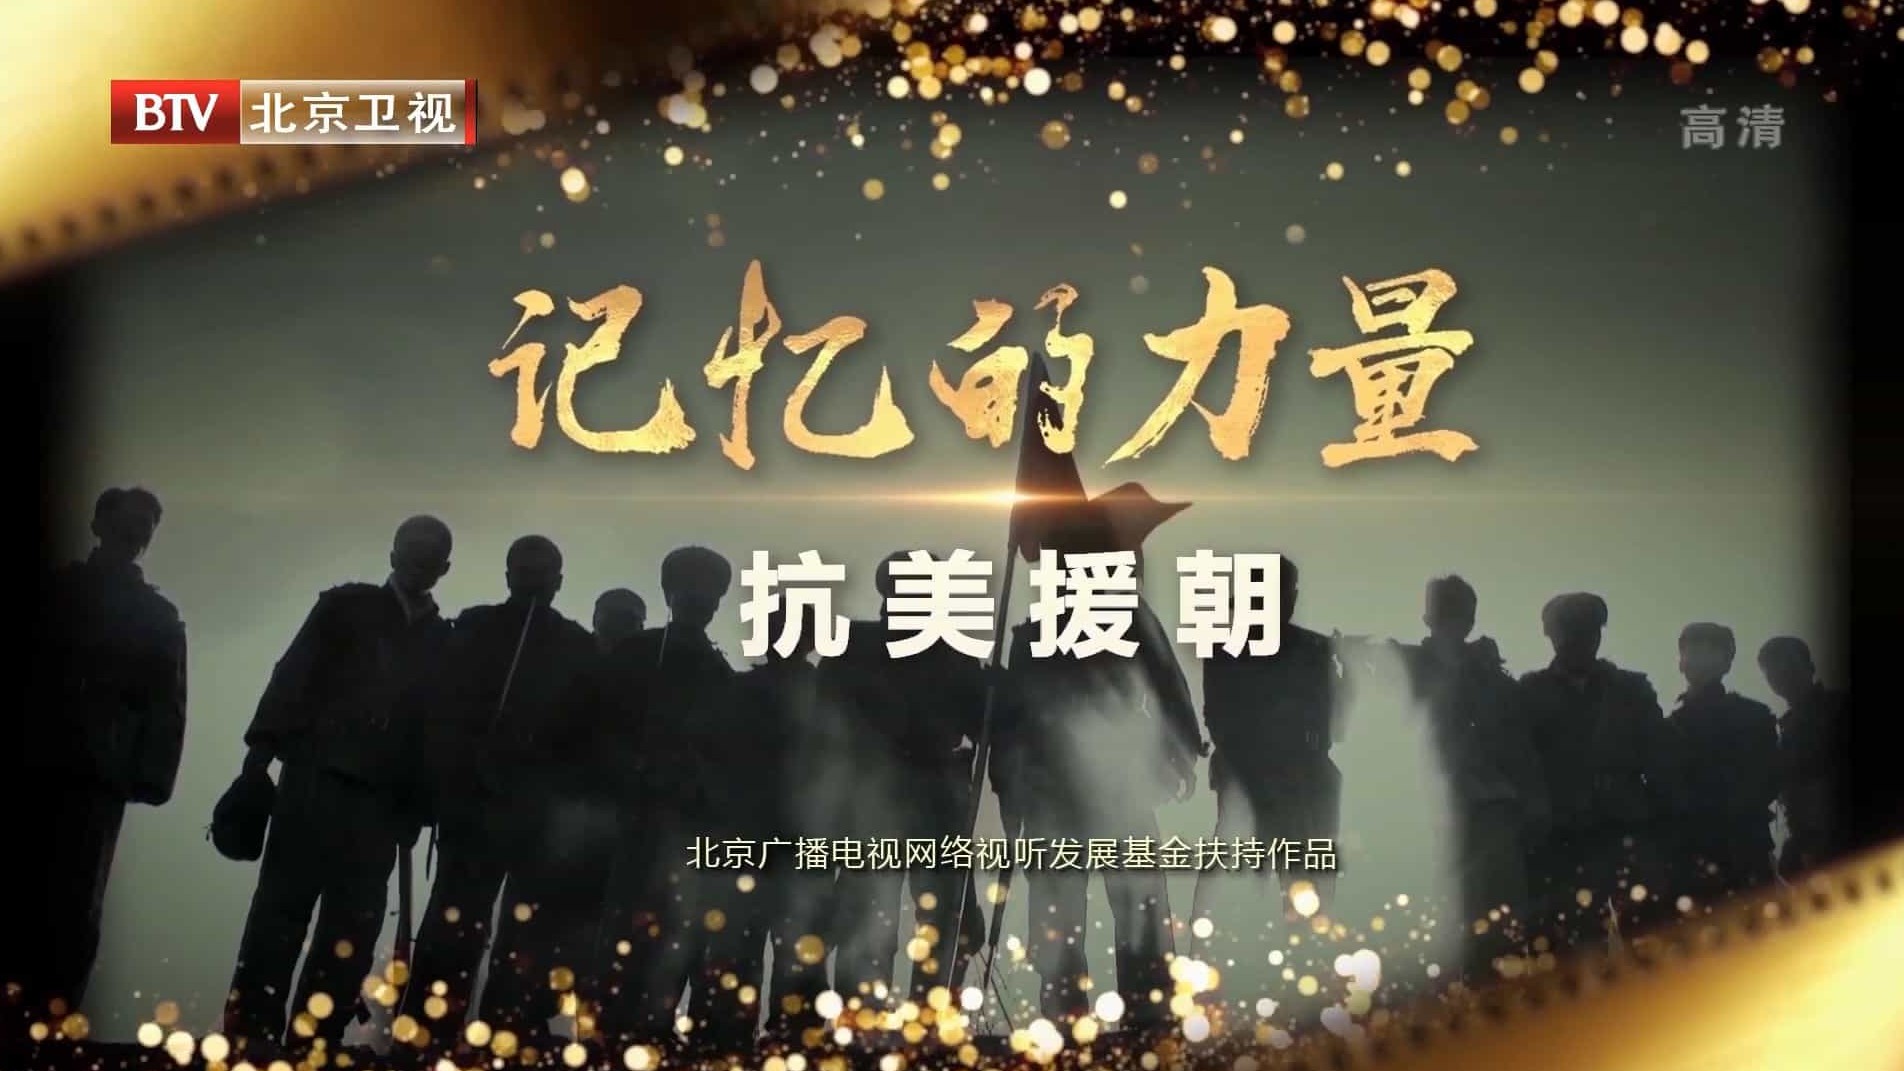 BTV纪录片《记忆的力量·抗美援朝 2020》汉语中字 1080i